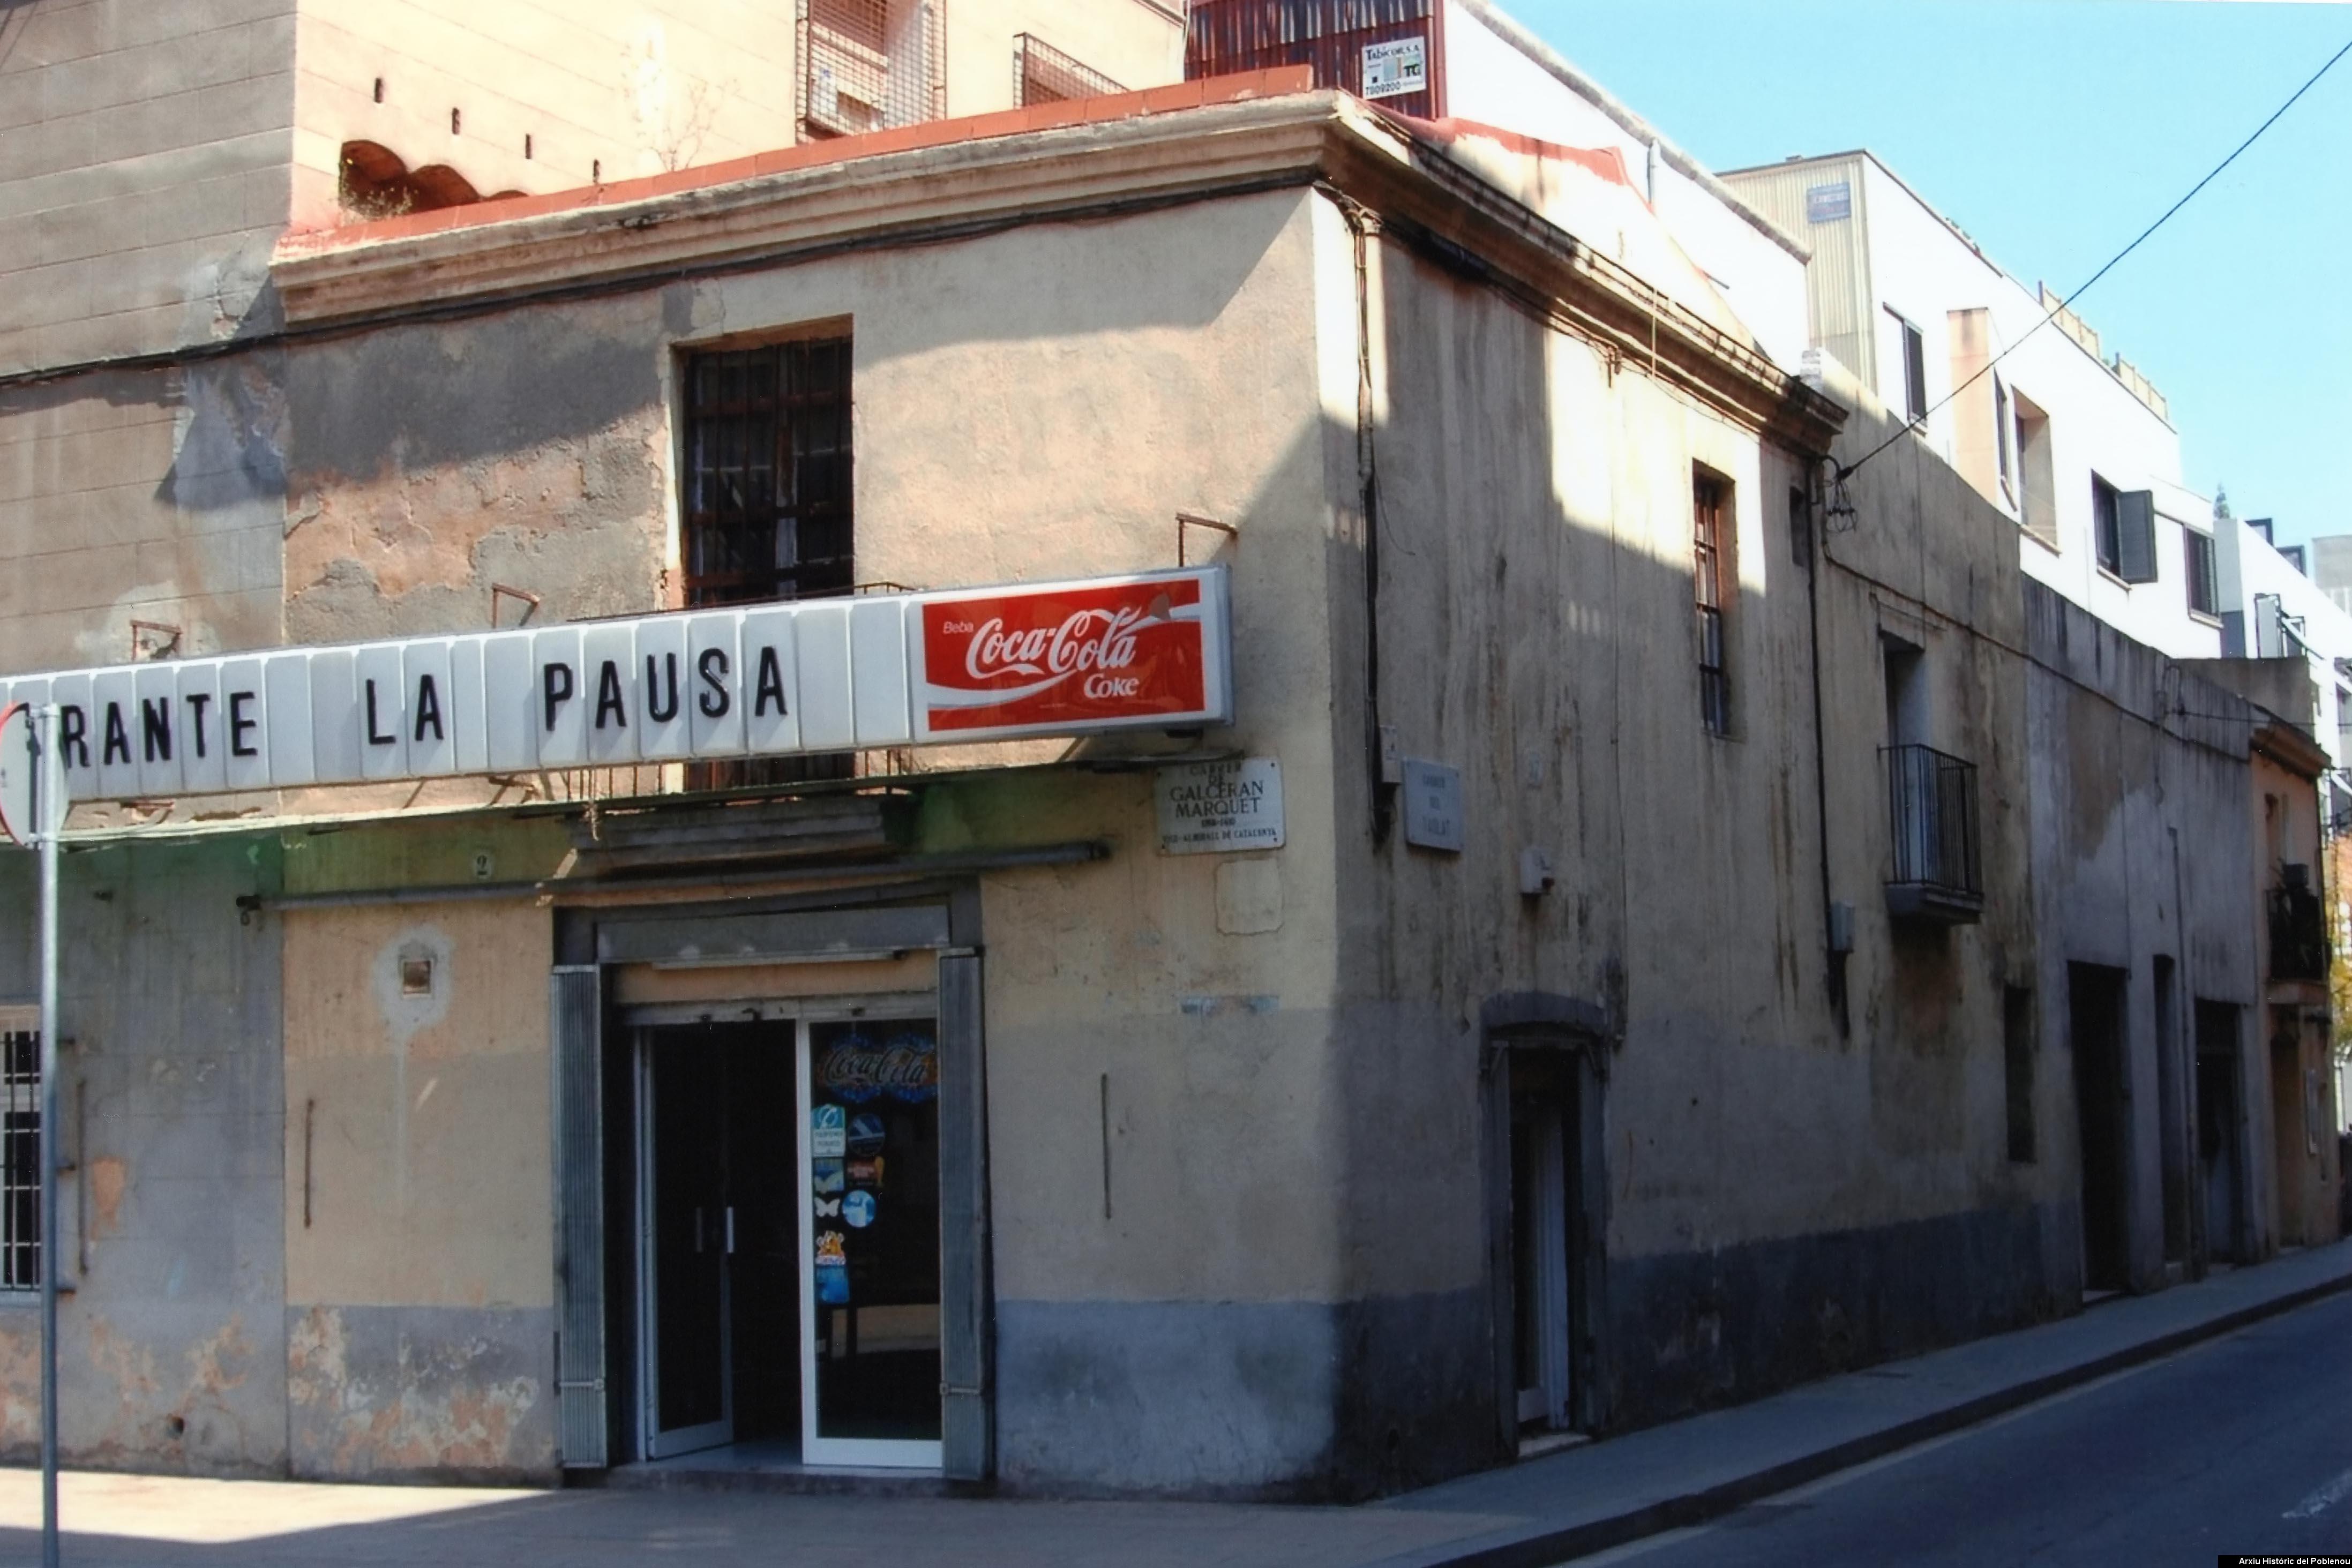 19701 Bar la pausa [2006]